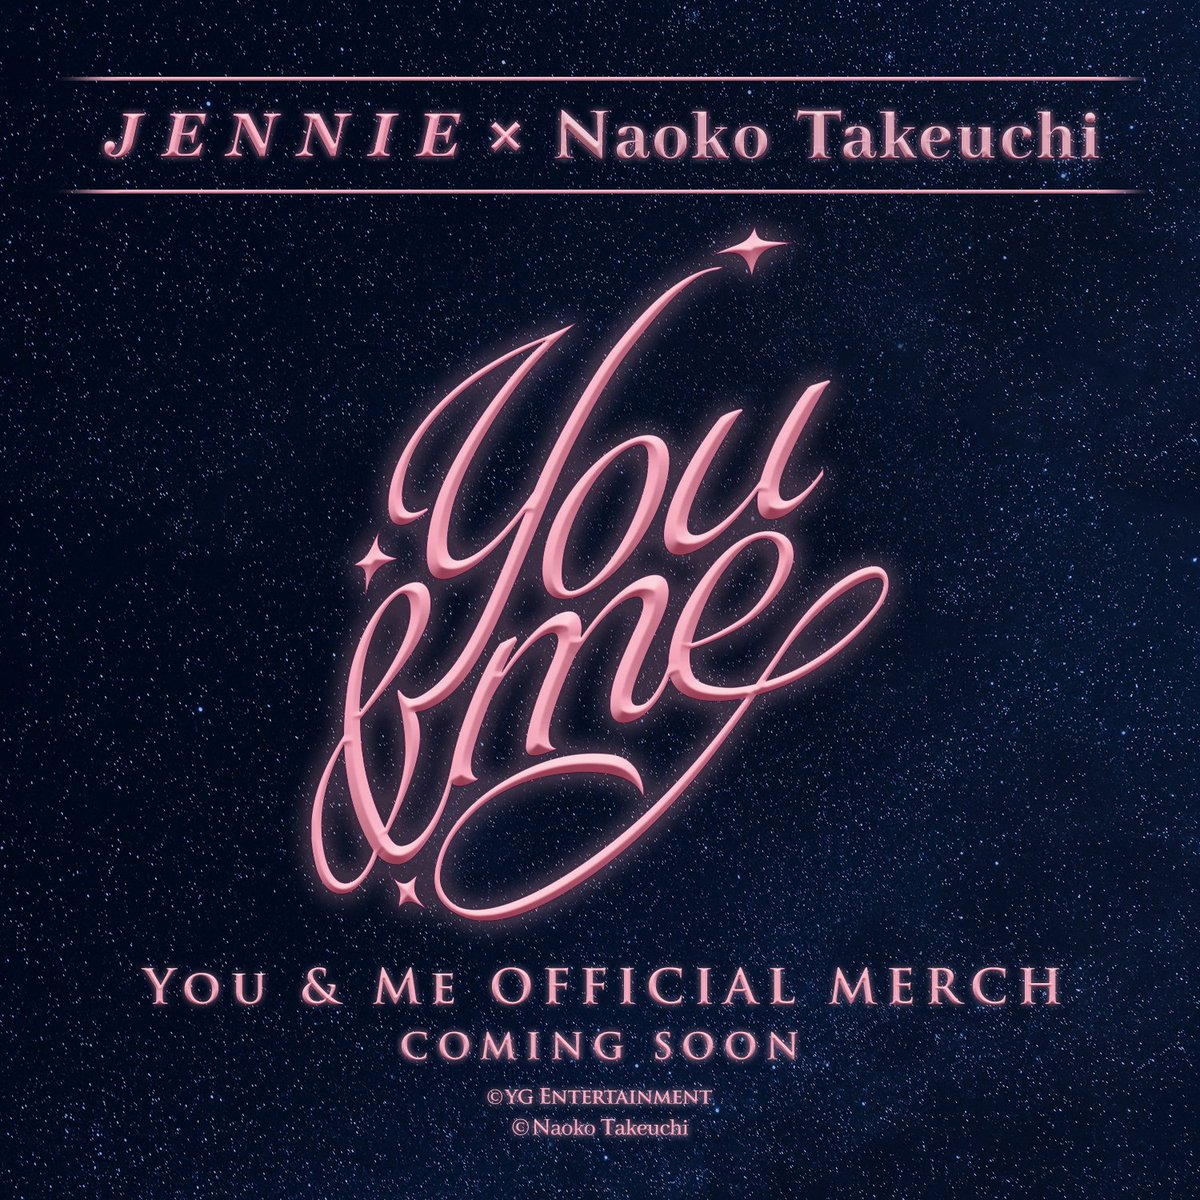 JENNIE × Naoko Takeuchi
You & Me COLLAB MD DROP NOTICE

COMING SOON

#JENNIE #제니 #BLACKPINK #블랙핑크 #NaokoTakeuchi #YouandMe #COLLABMD #YGSELECT